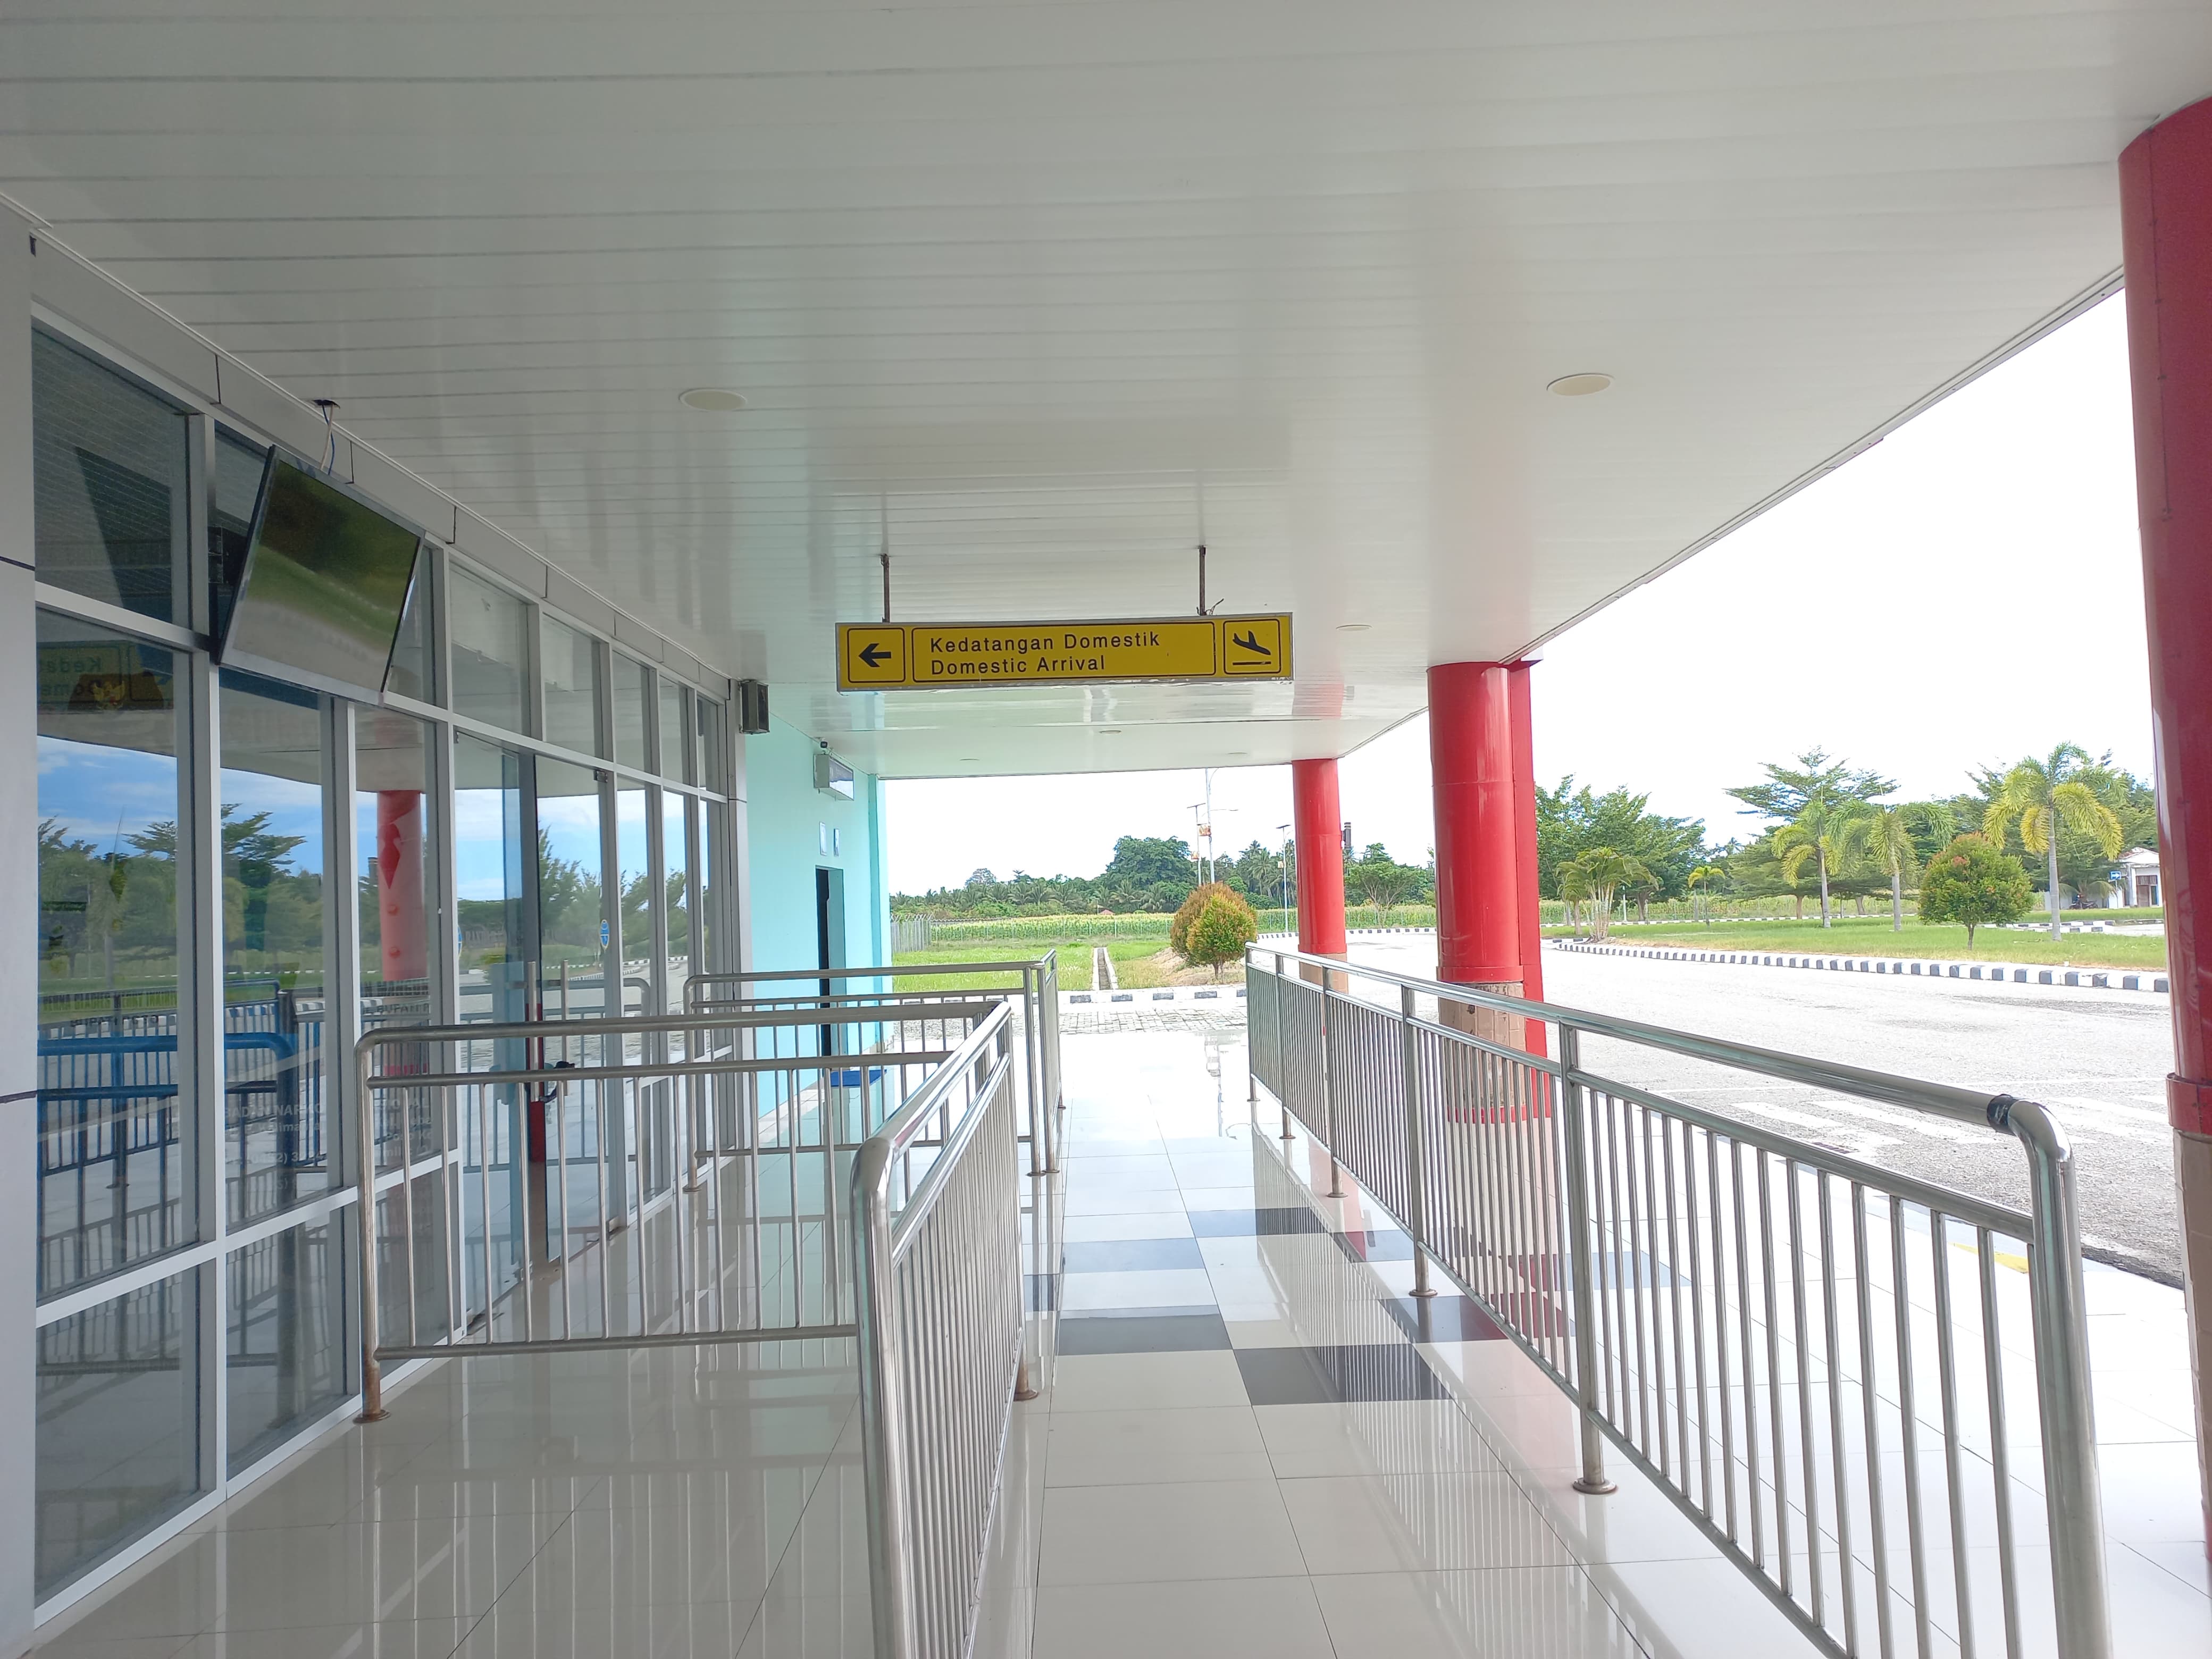 Foto Bandara Pintu Kedatangan